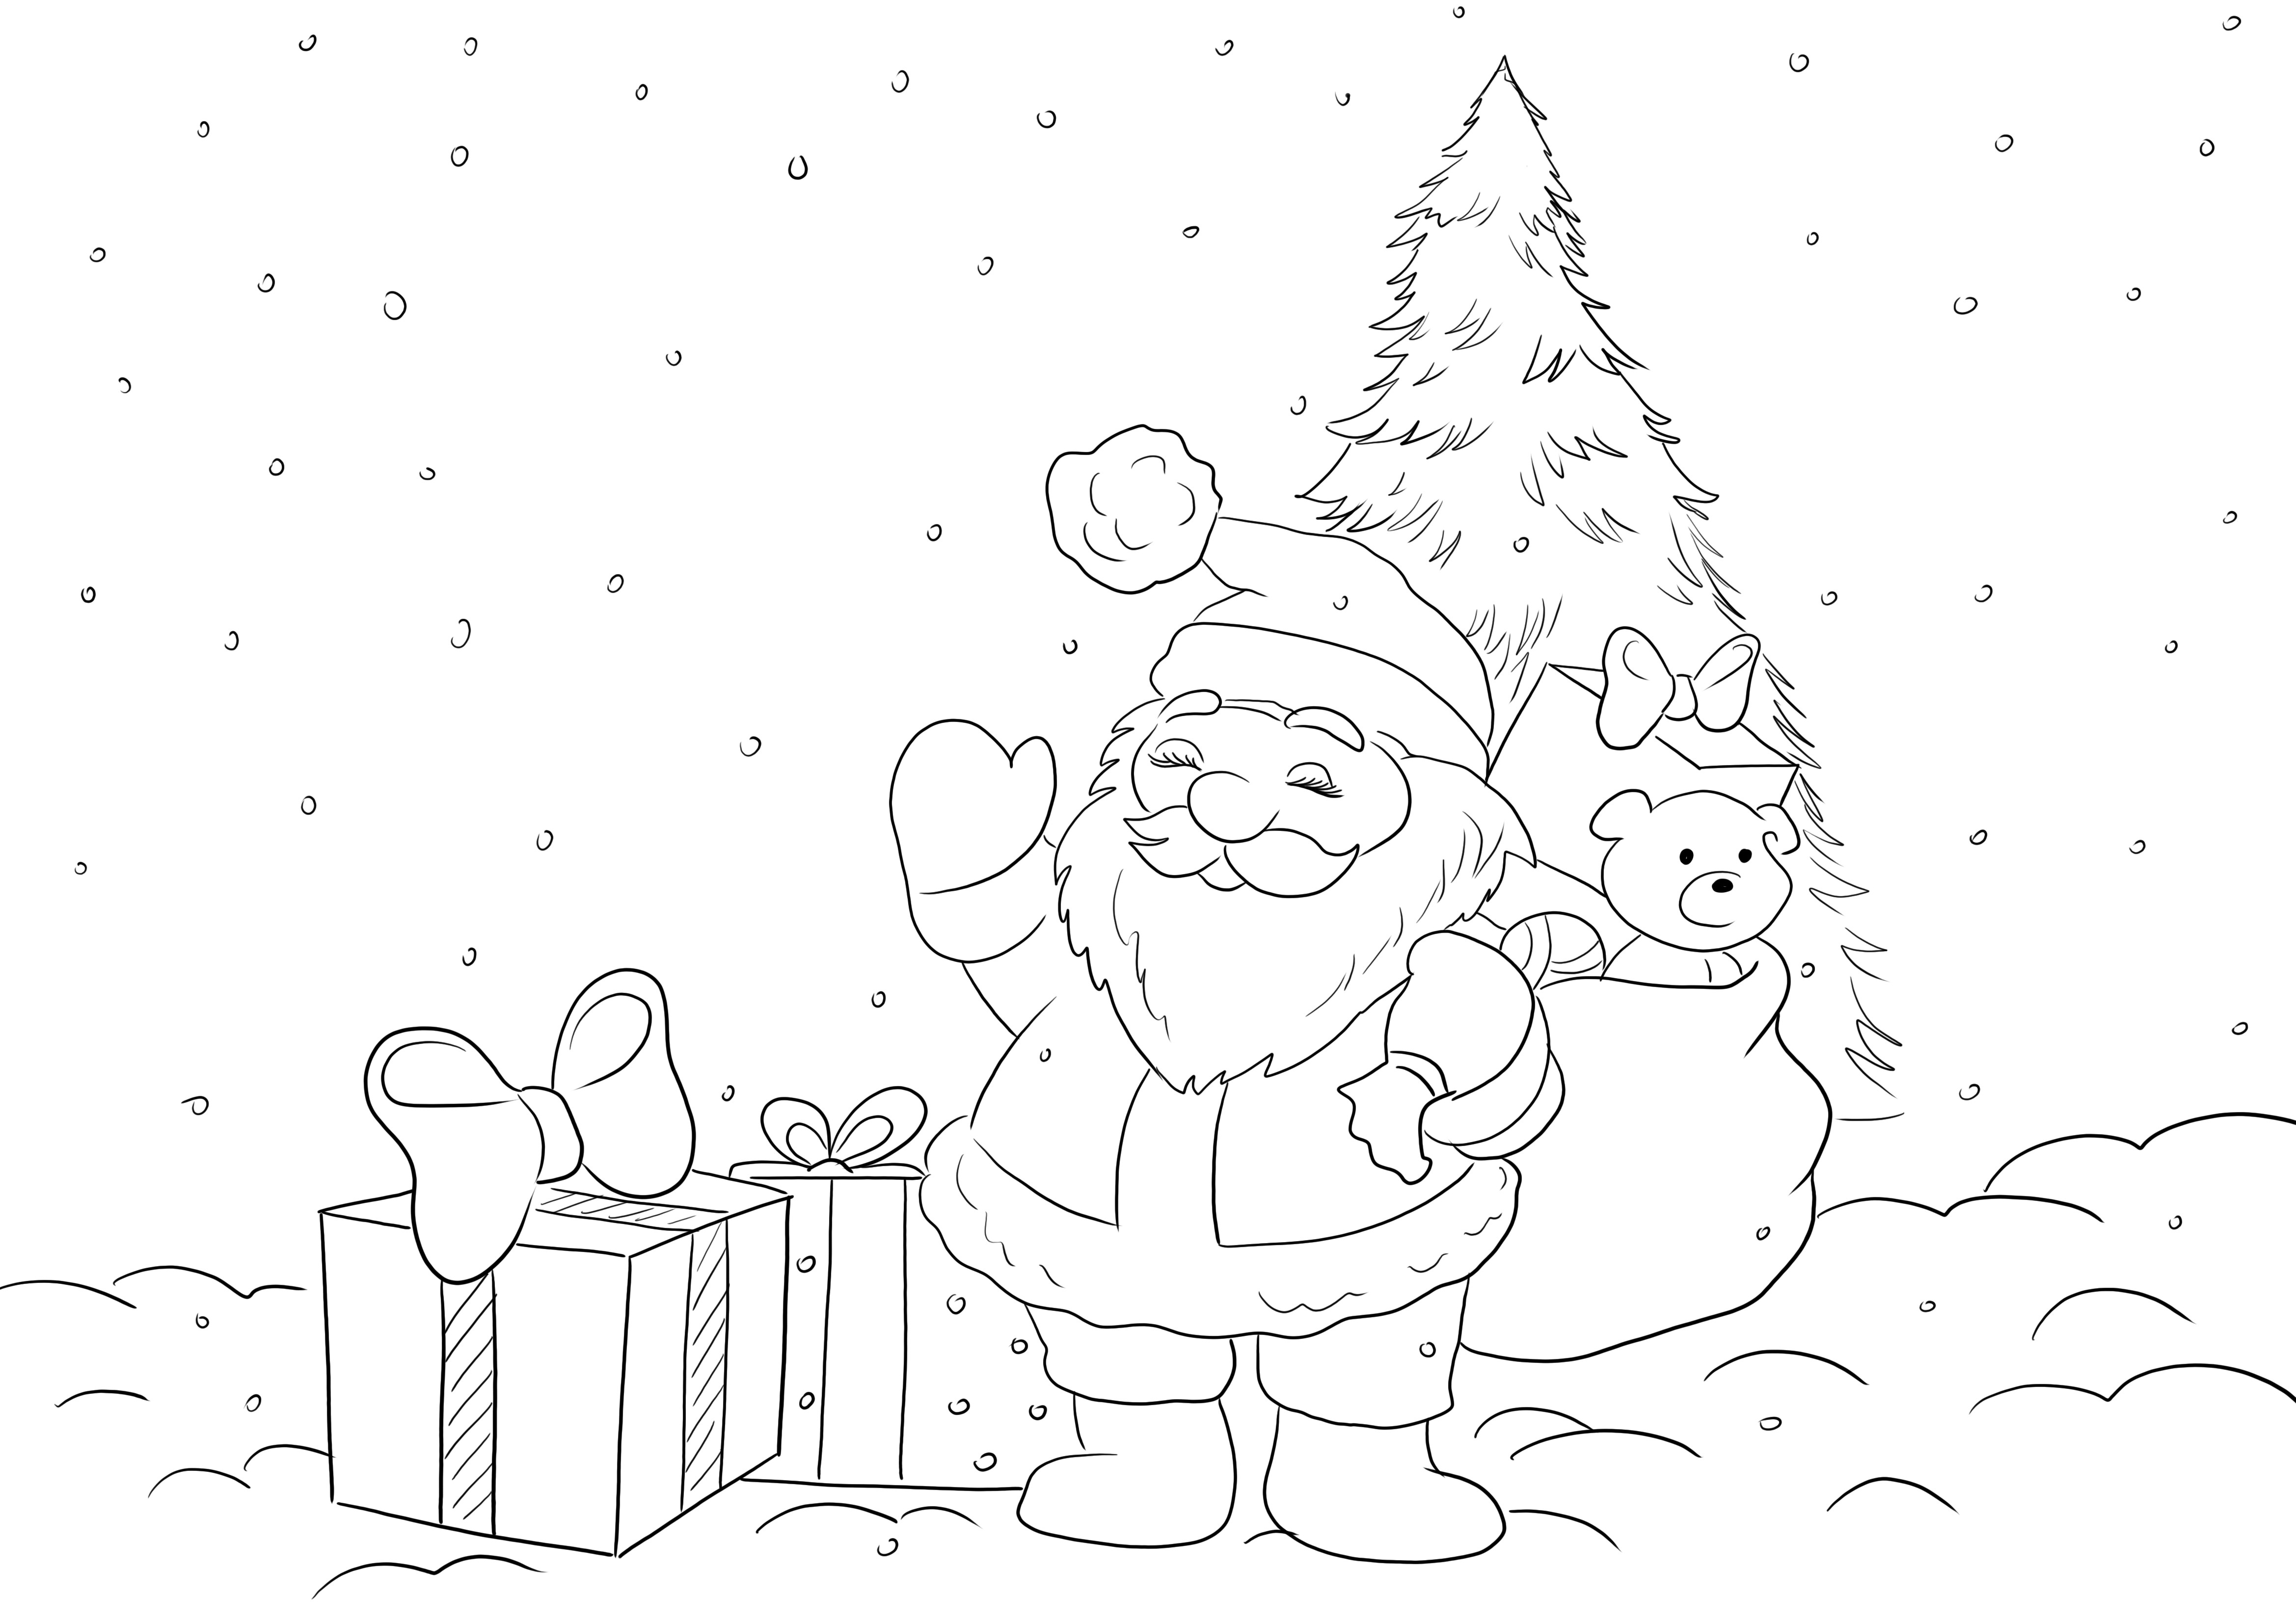 Imagen para colorear de Papá Noel con regalos esperando a que todos los niños coloreen con diversión